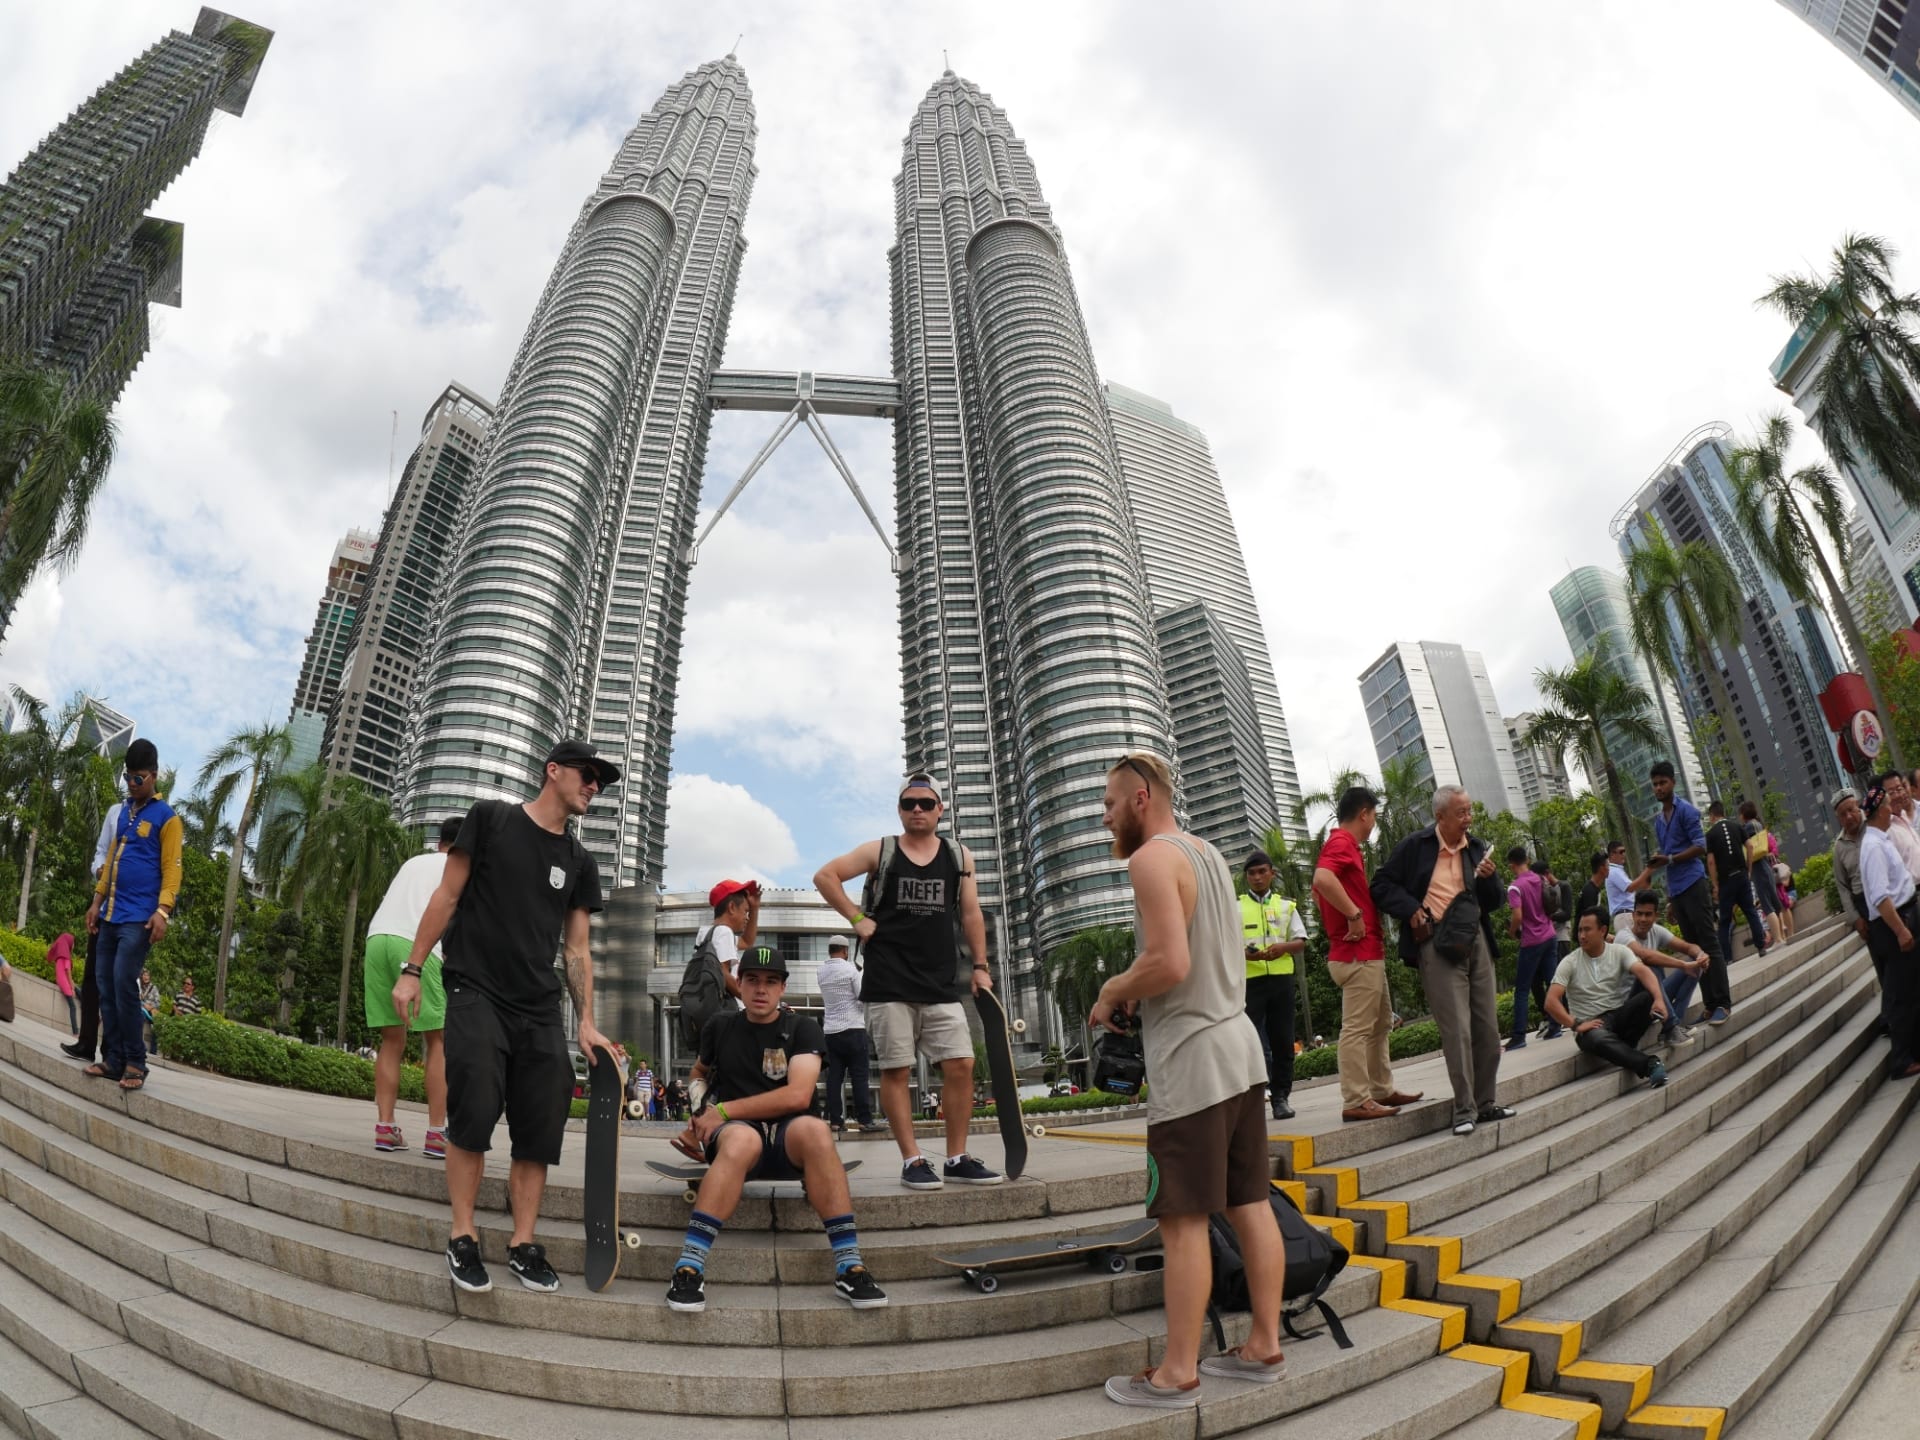 Celá SkateTripping parta před ikonickými mrakodrapy Petronas Towers v Kuala Lumpur